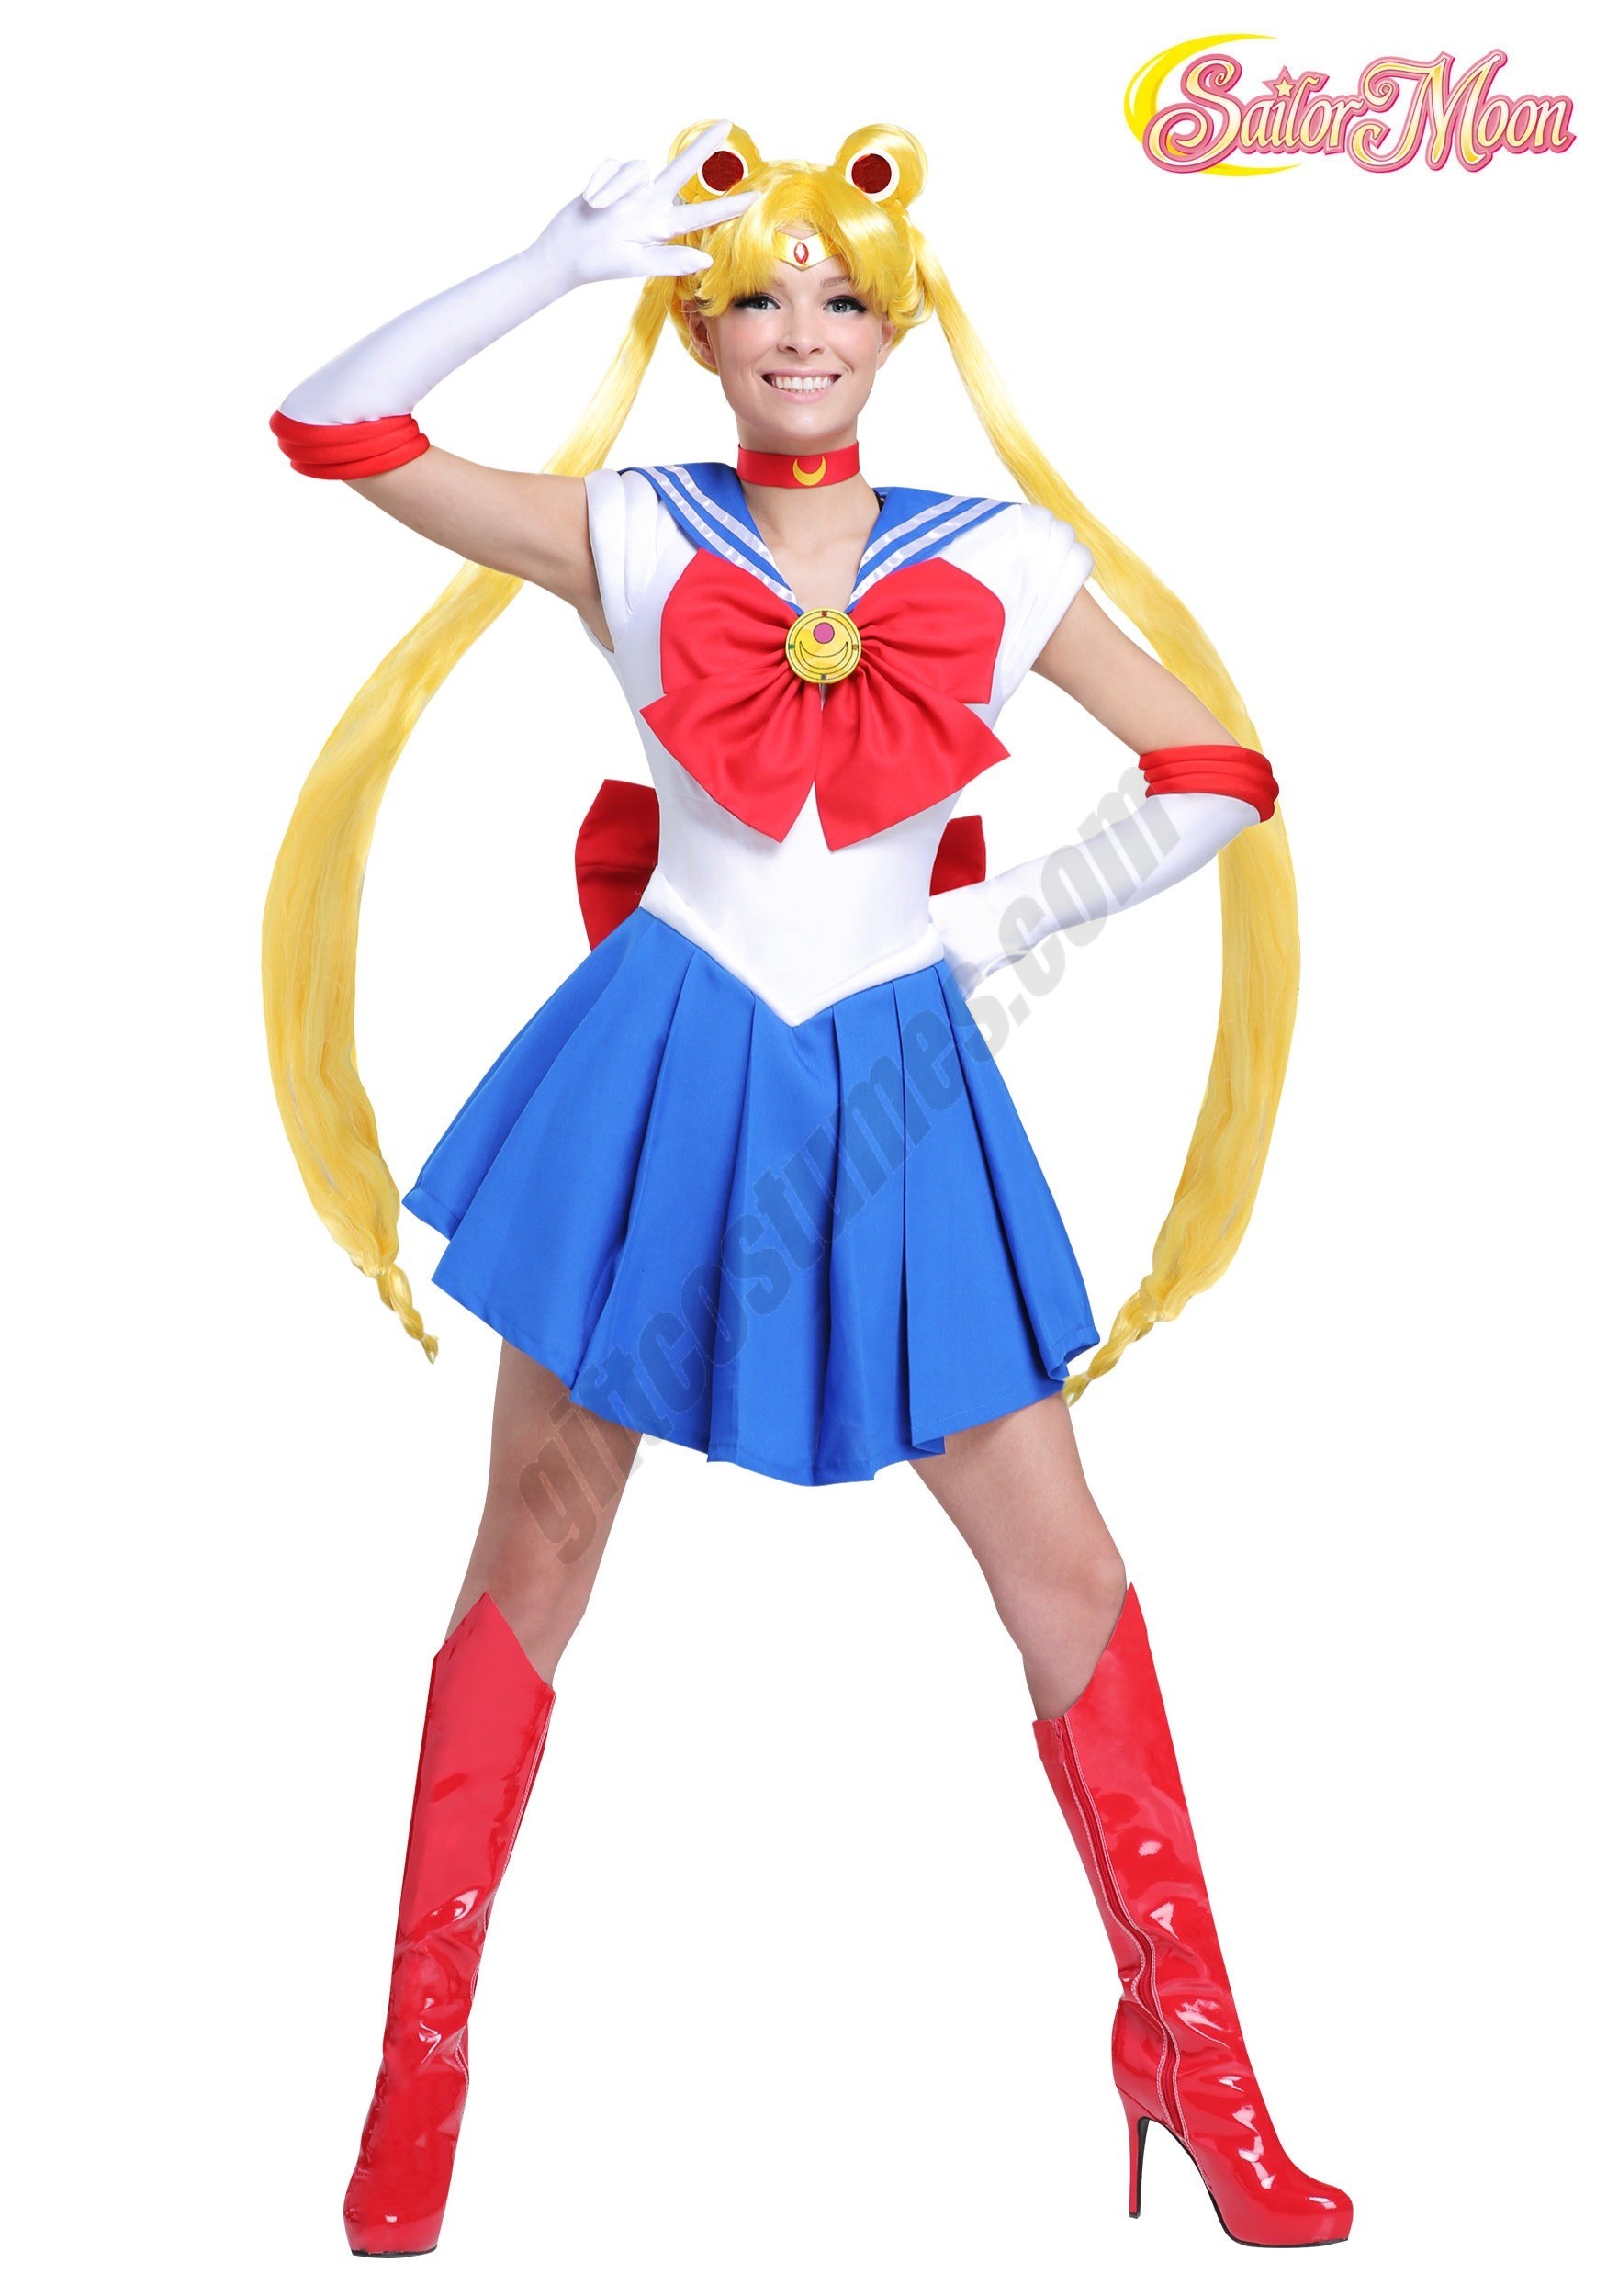 Sailor Moon Women's Costume Promotions - Sailor Moon Women's Costume Promotions